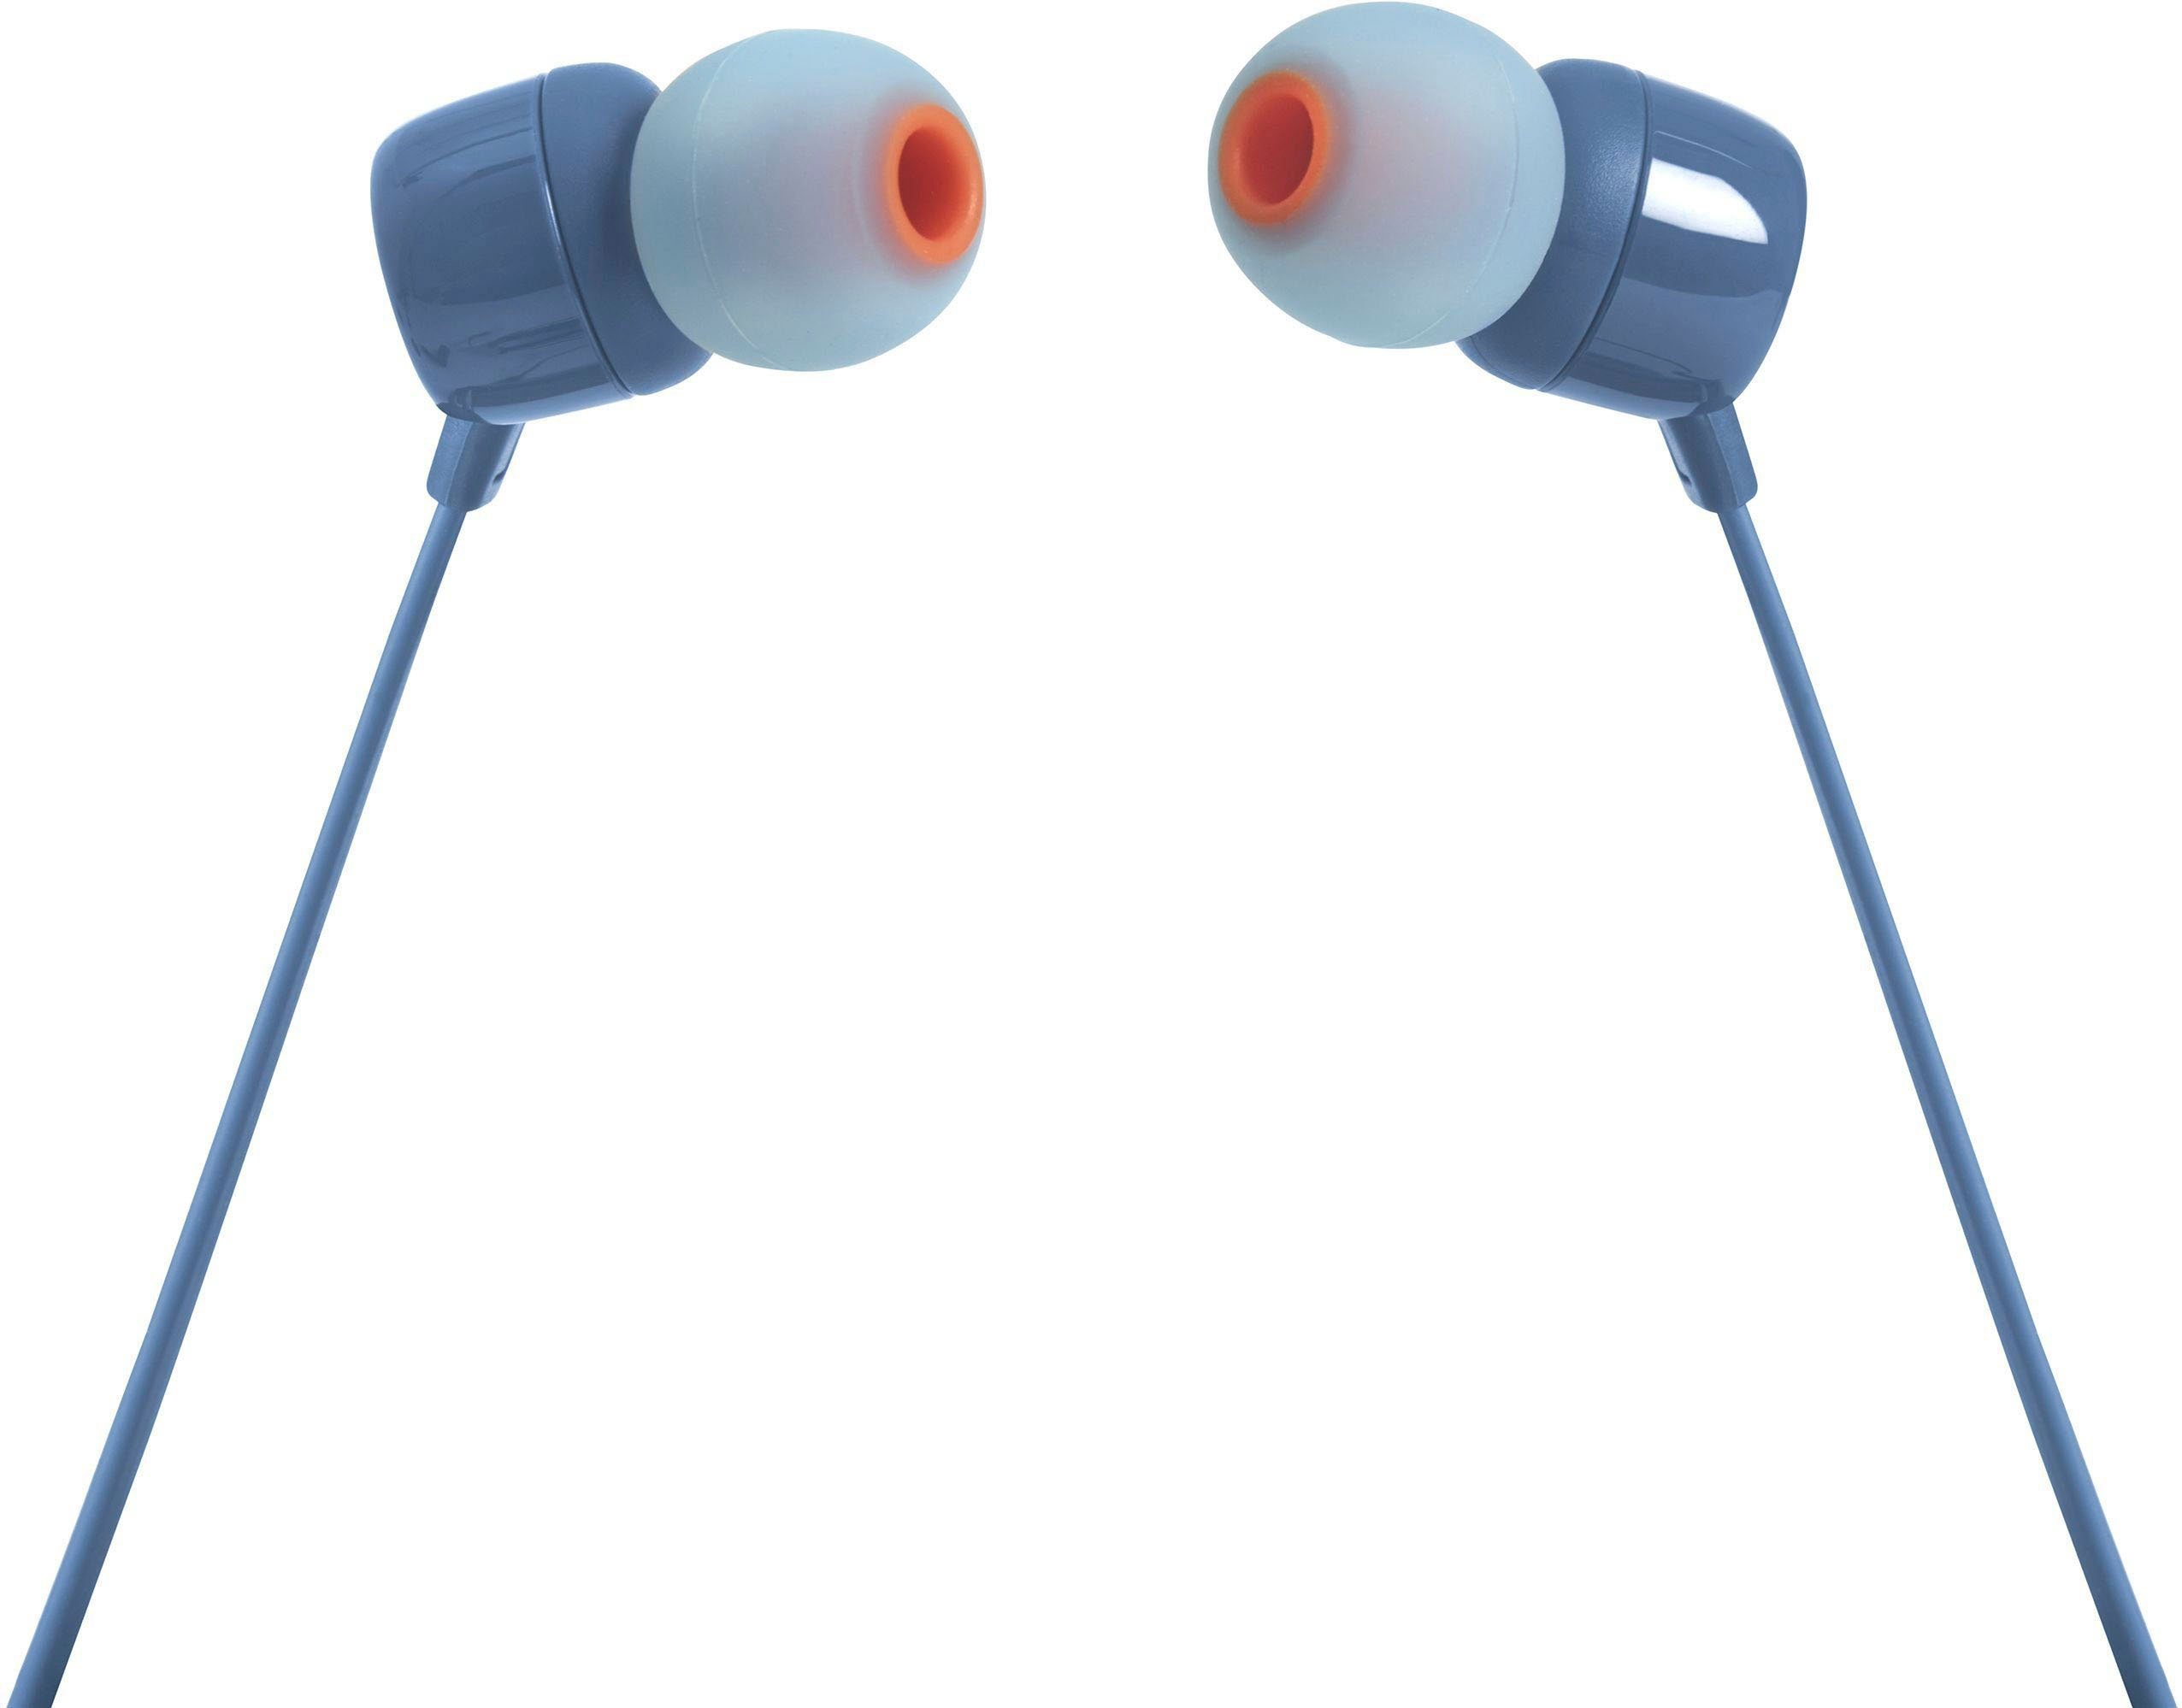 JBL In-Ear-Kopfhörer T110 blau